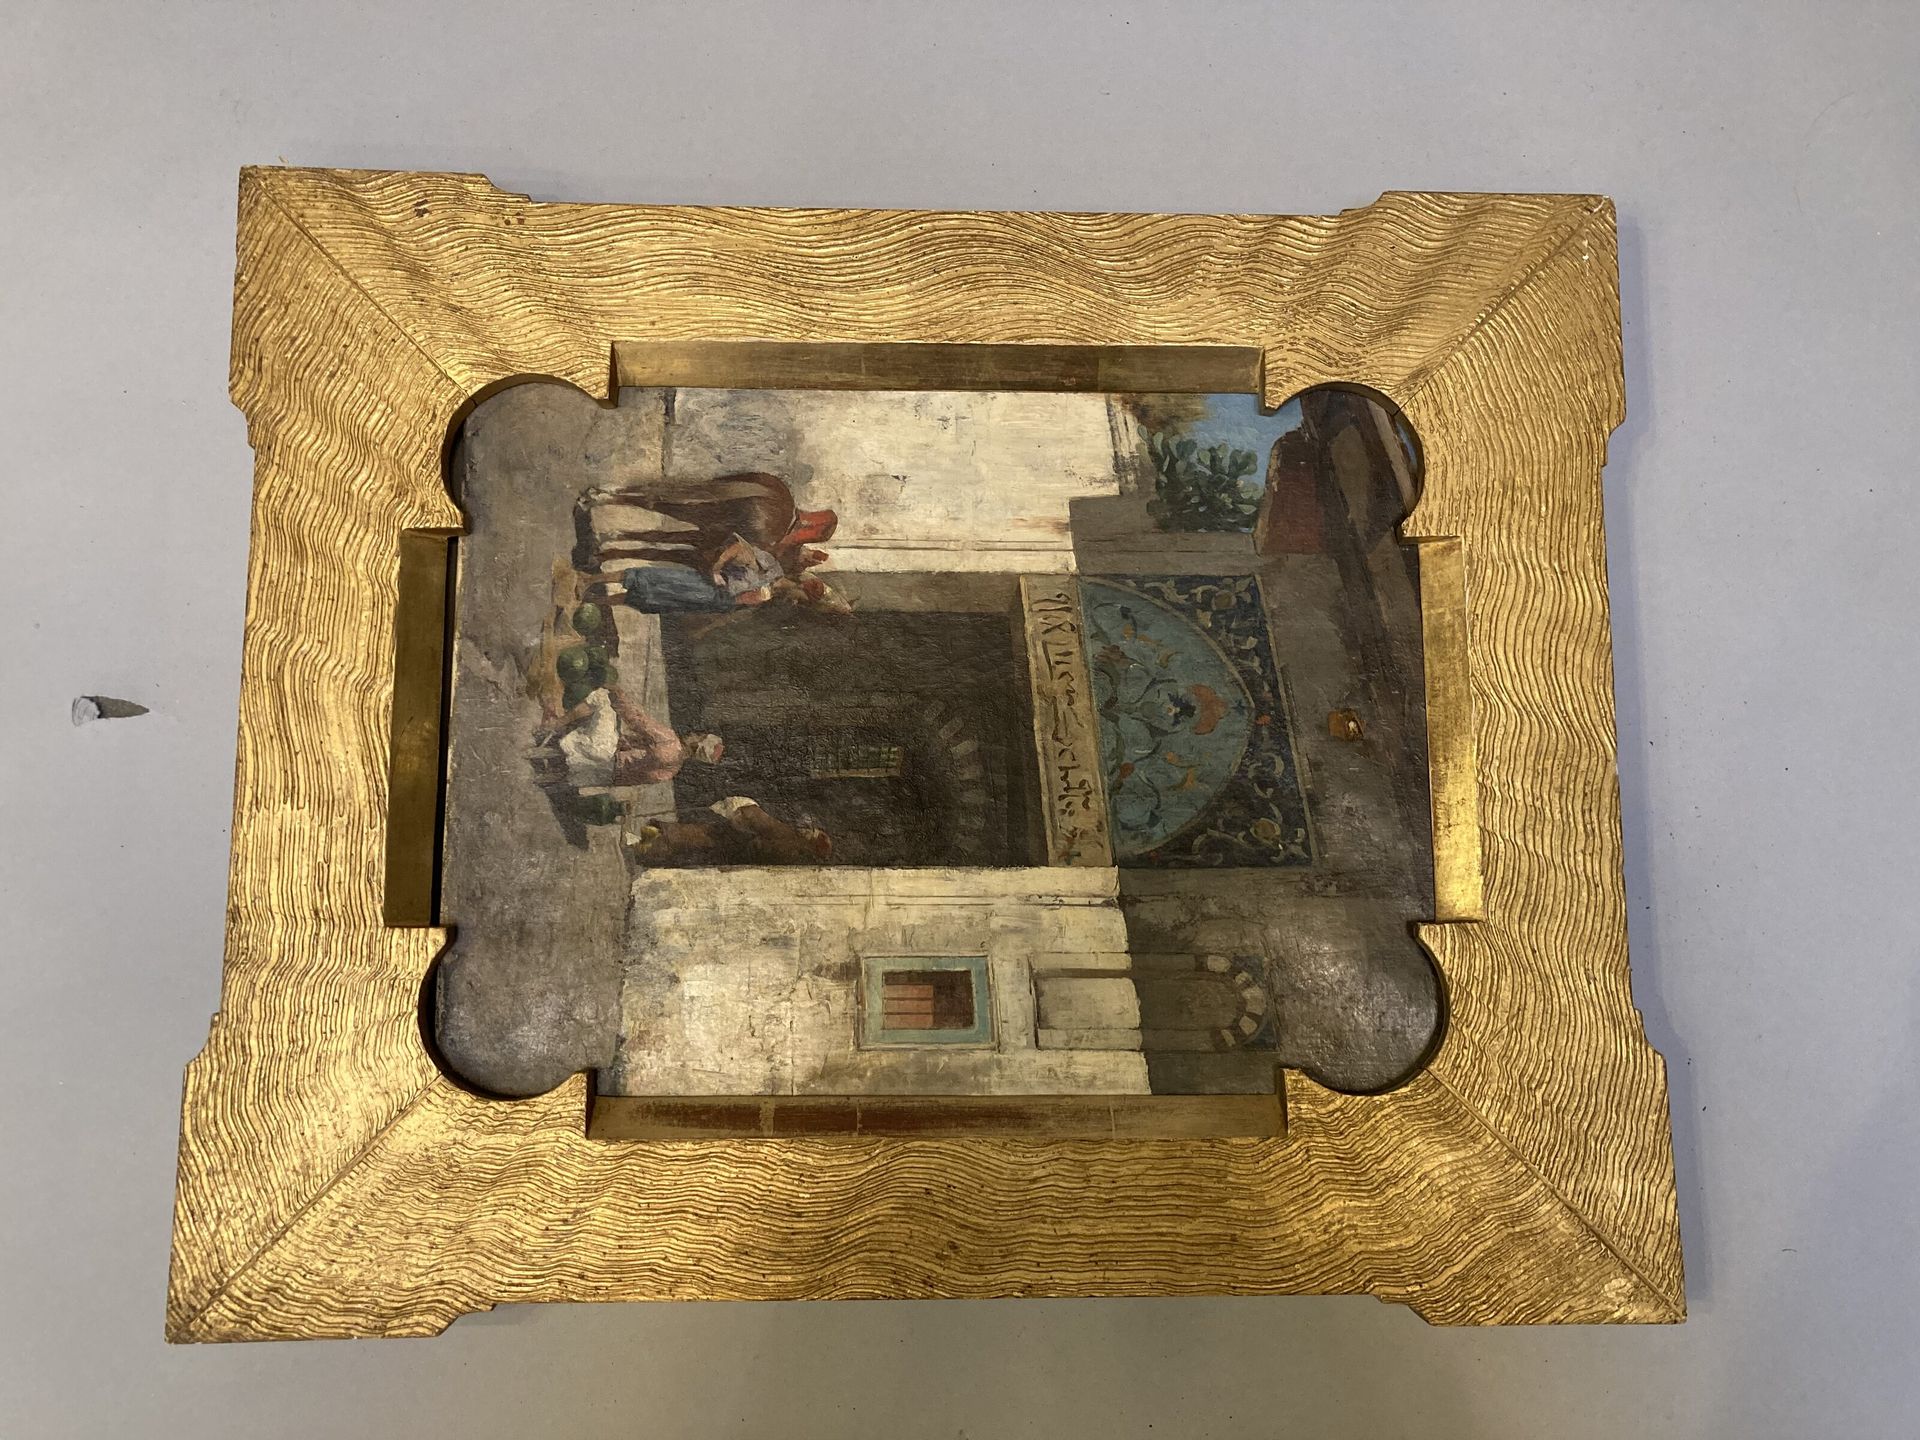 Null 卖西瓜的人

油画

东方主义风格的绘画，镀金木框。

33 x 24厘米

恢复和故障

原样出售